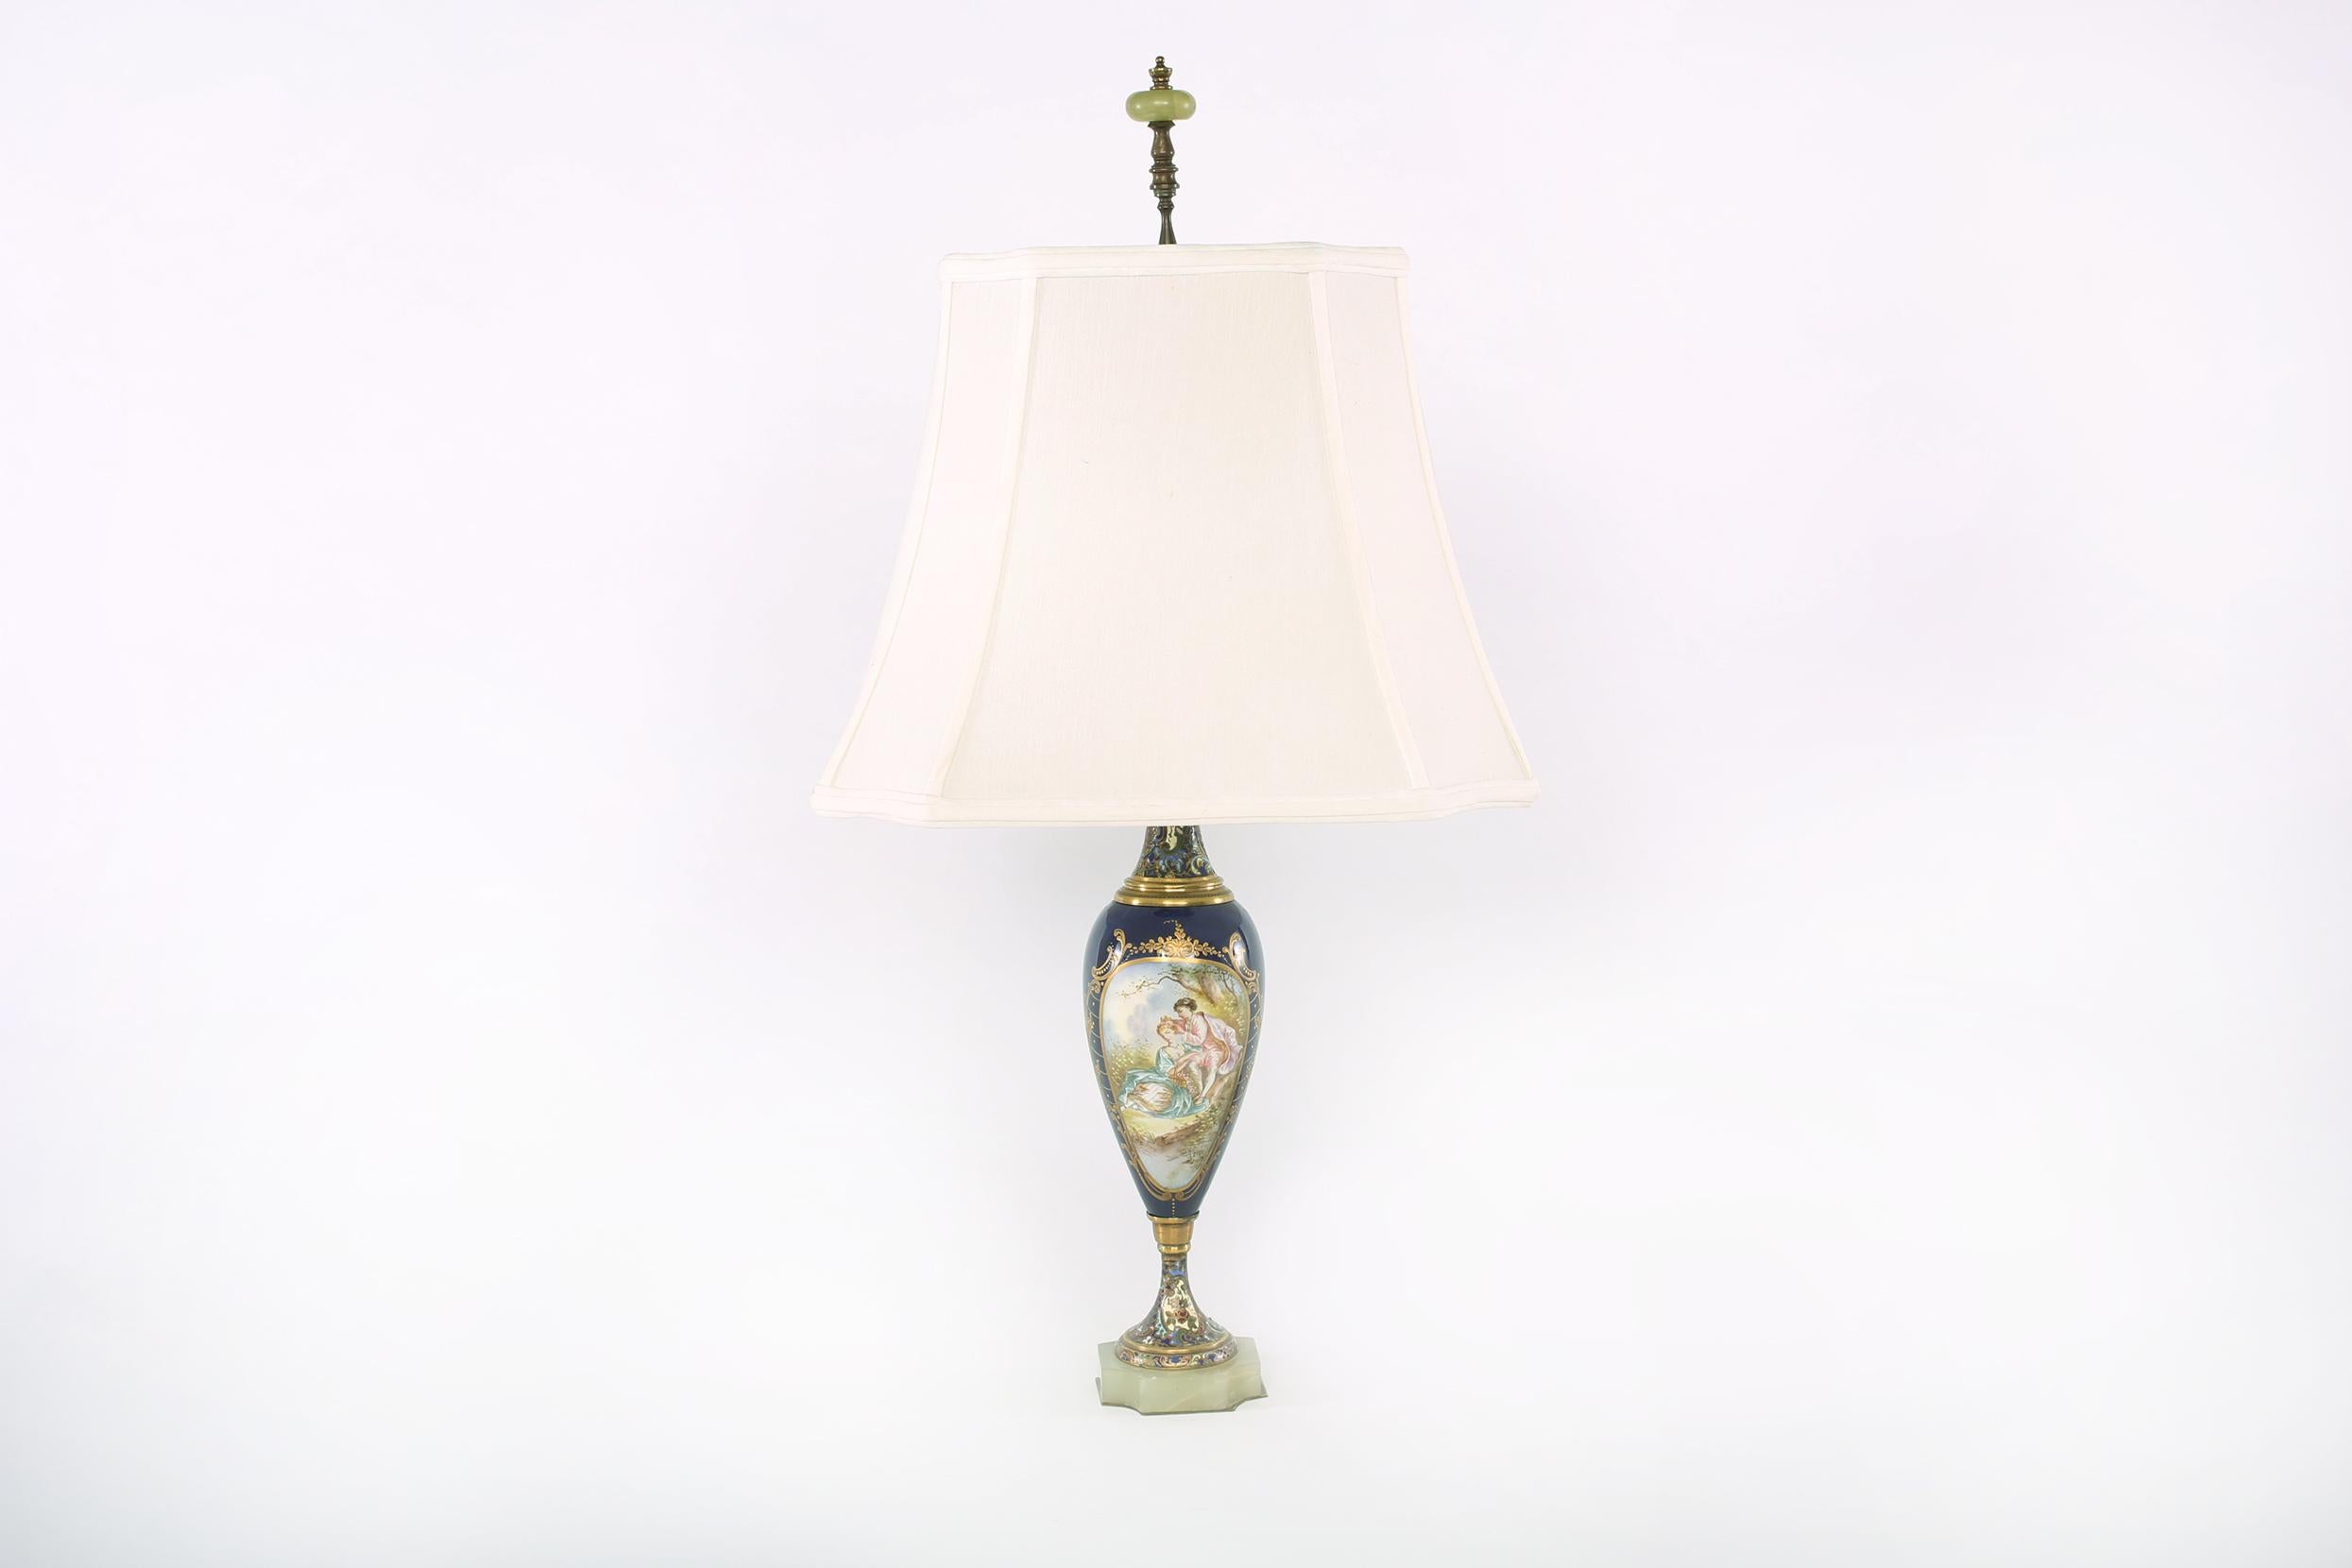 Paire de lampes de table de style Sèvres en forme d'urne en porcelaine montée en métal doré sur une base carrée en onyx, avec des détails de conception peints de façon exubérante et des motifs feuillus. Chaque lampe est en bon état de fonctionnement